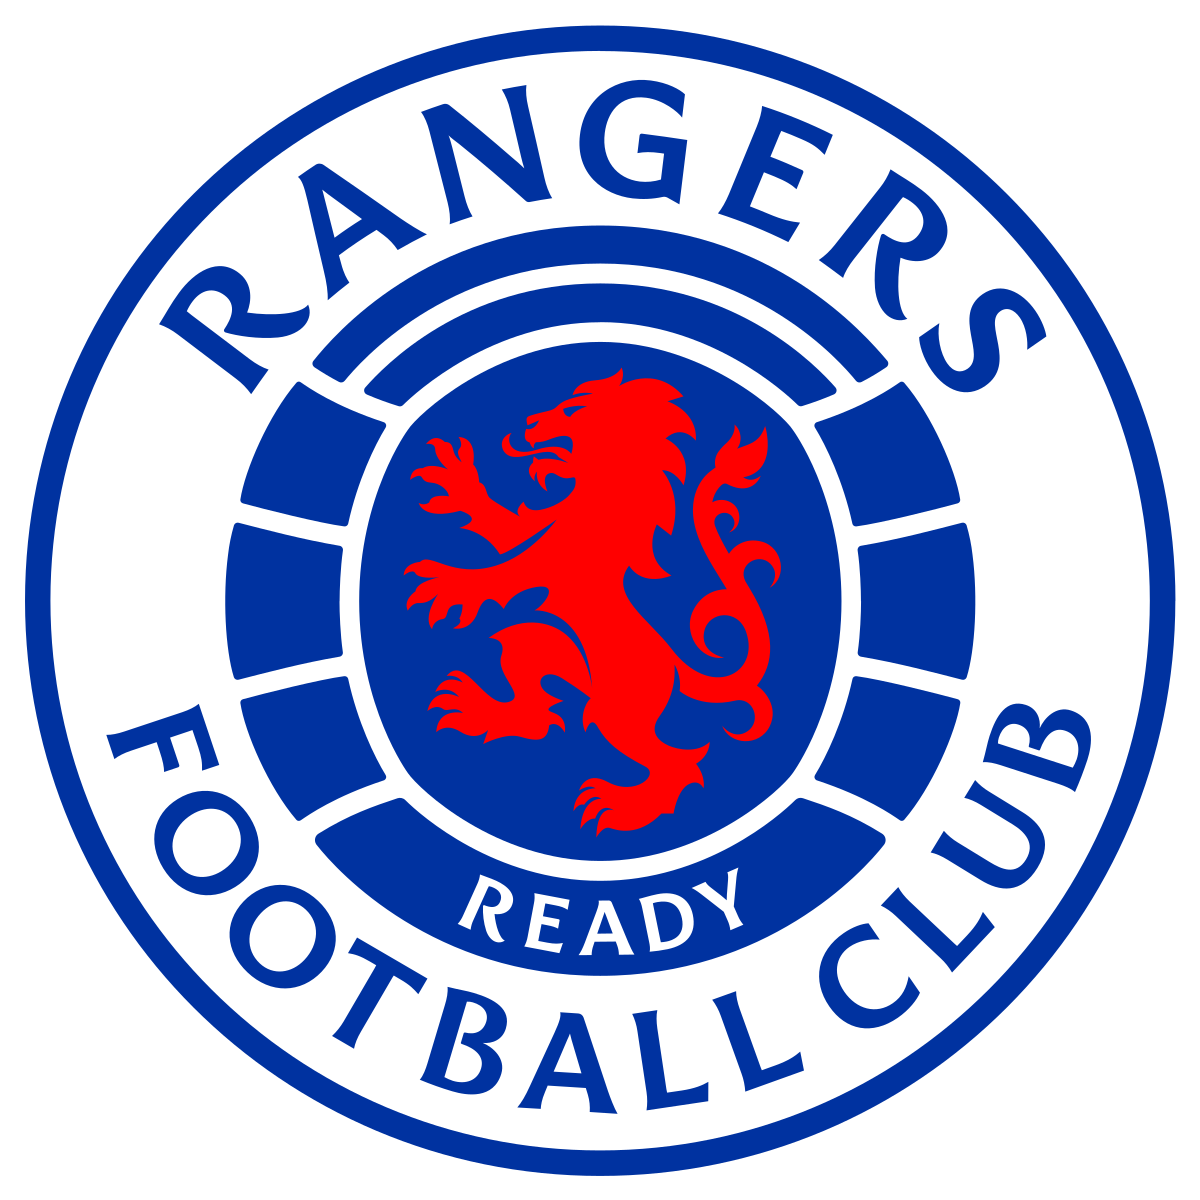 Rangers F.C. - Wikipedia